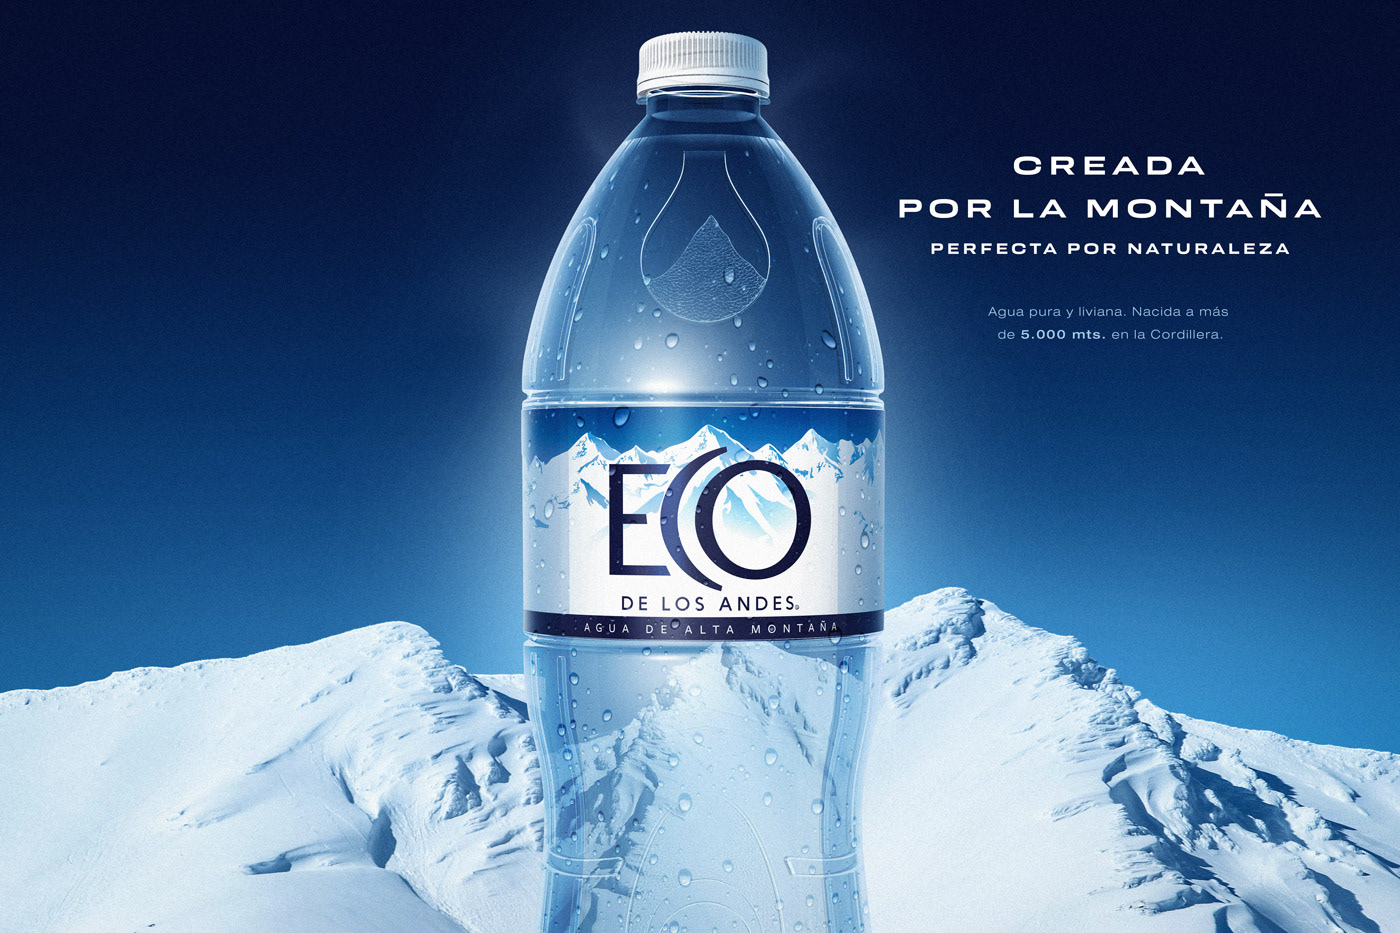 agua argentina Cordillera ECO de los Andes nestle nestle waters retoque digital retoque fotográfico water botella